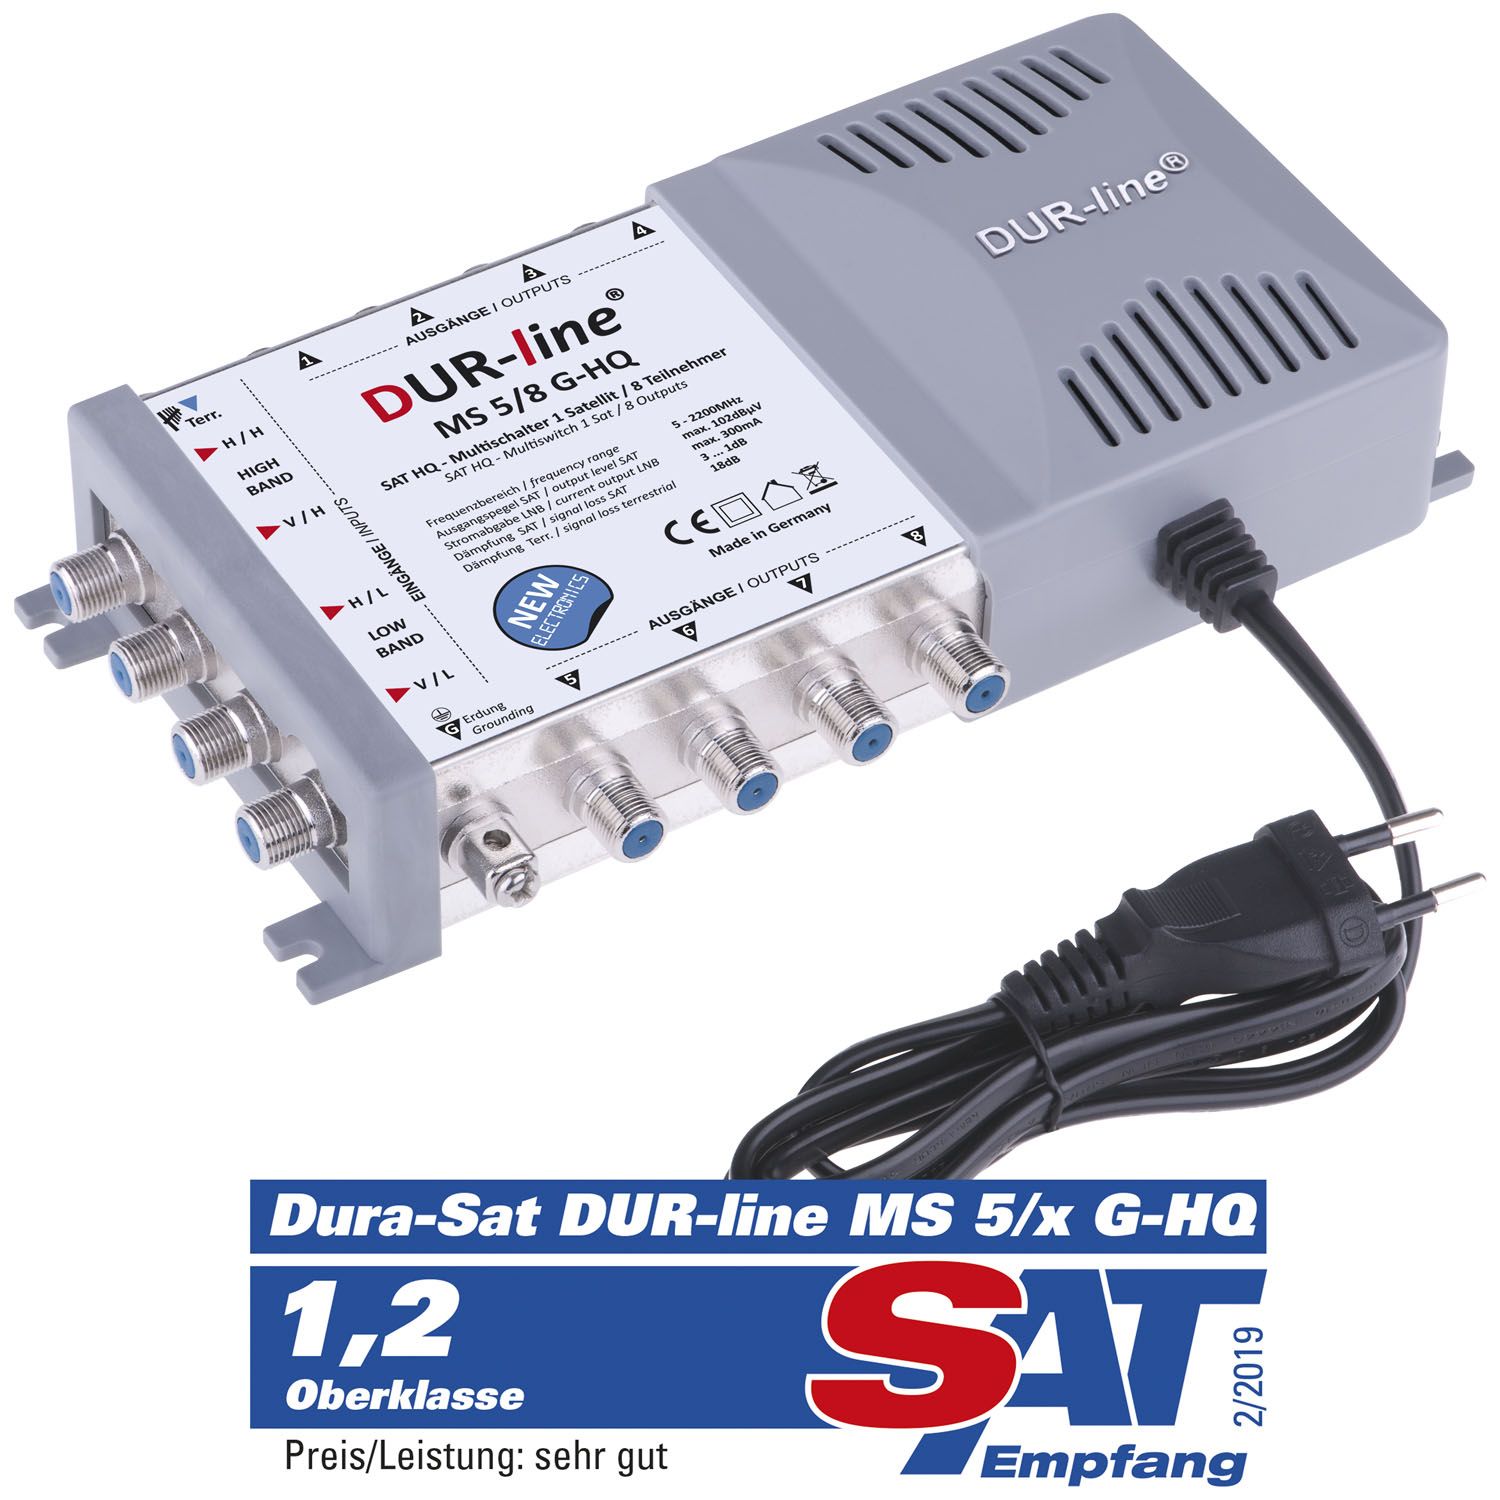 DUR-line MS 5/8 G-HQ - Multischalter